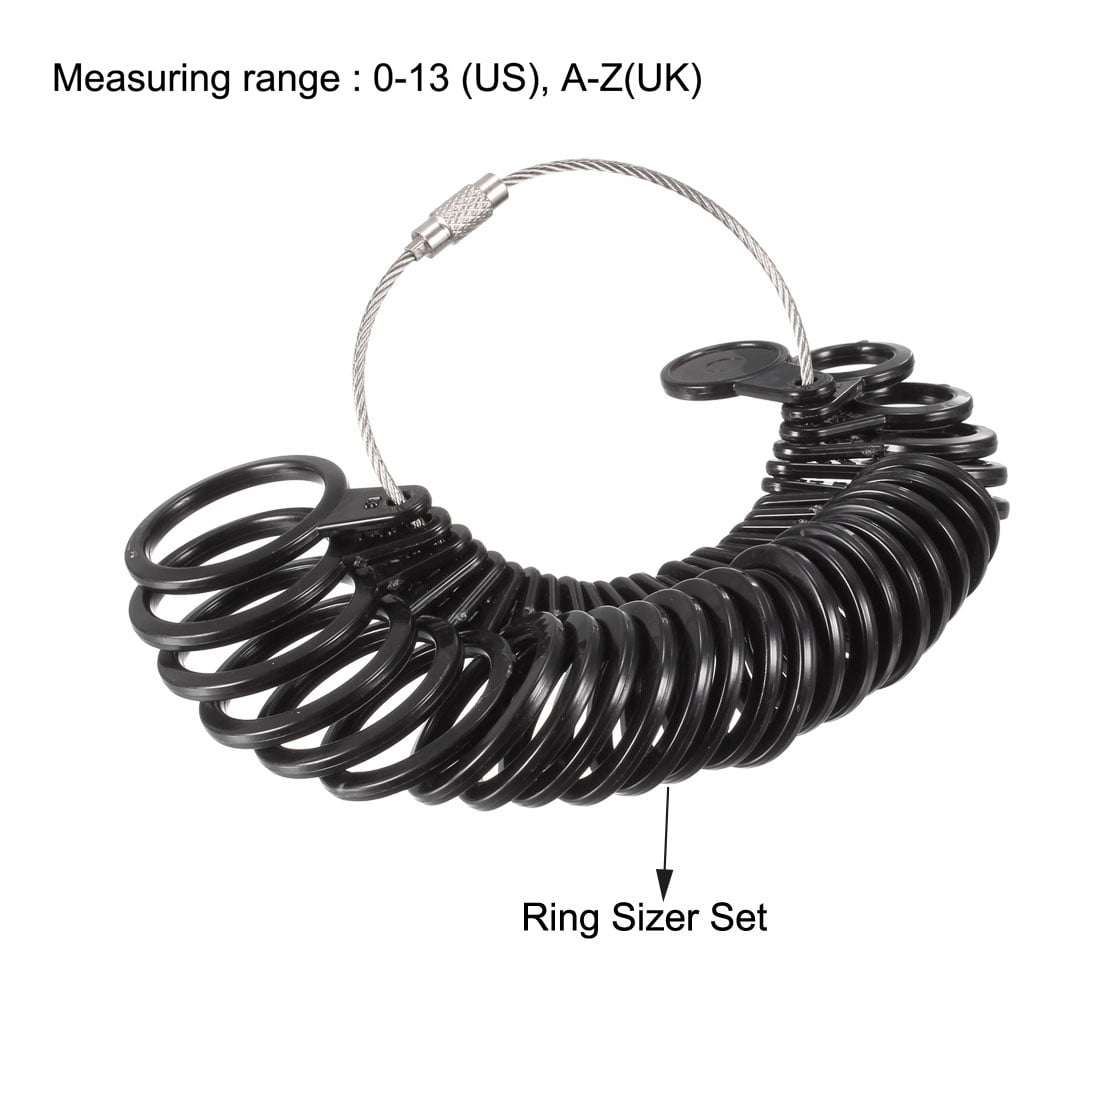 NIUPIKA Ring Sizer Measuring Tool Set Ring Sizer Tool Ring Sizing